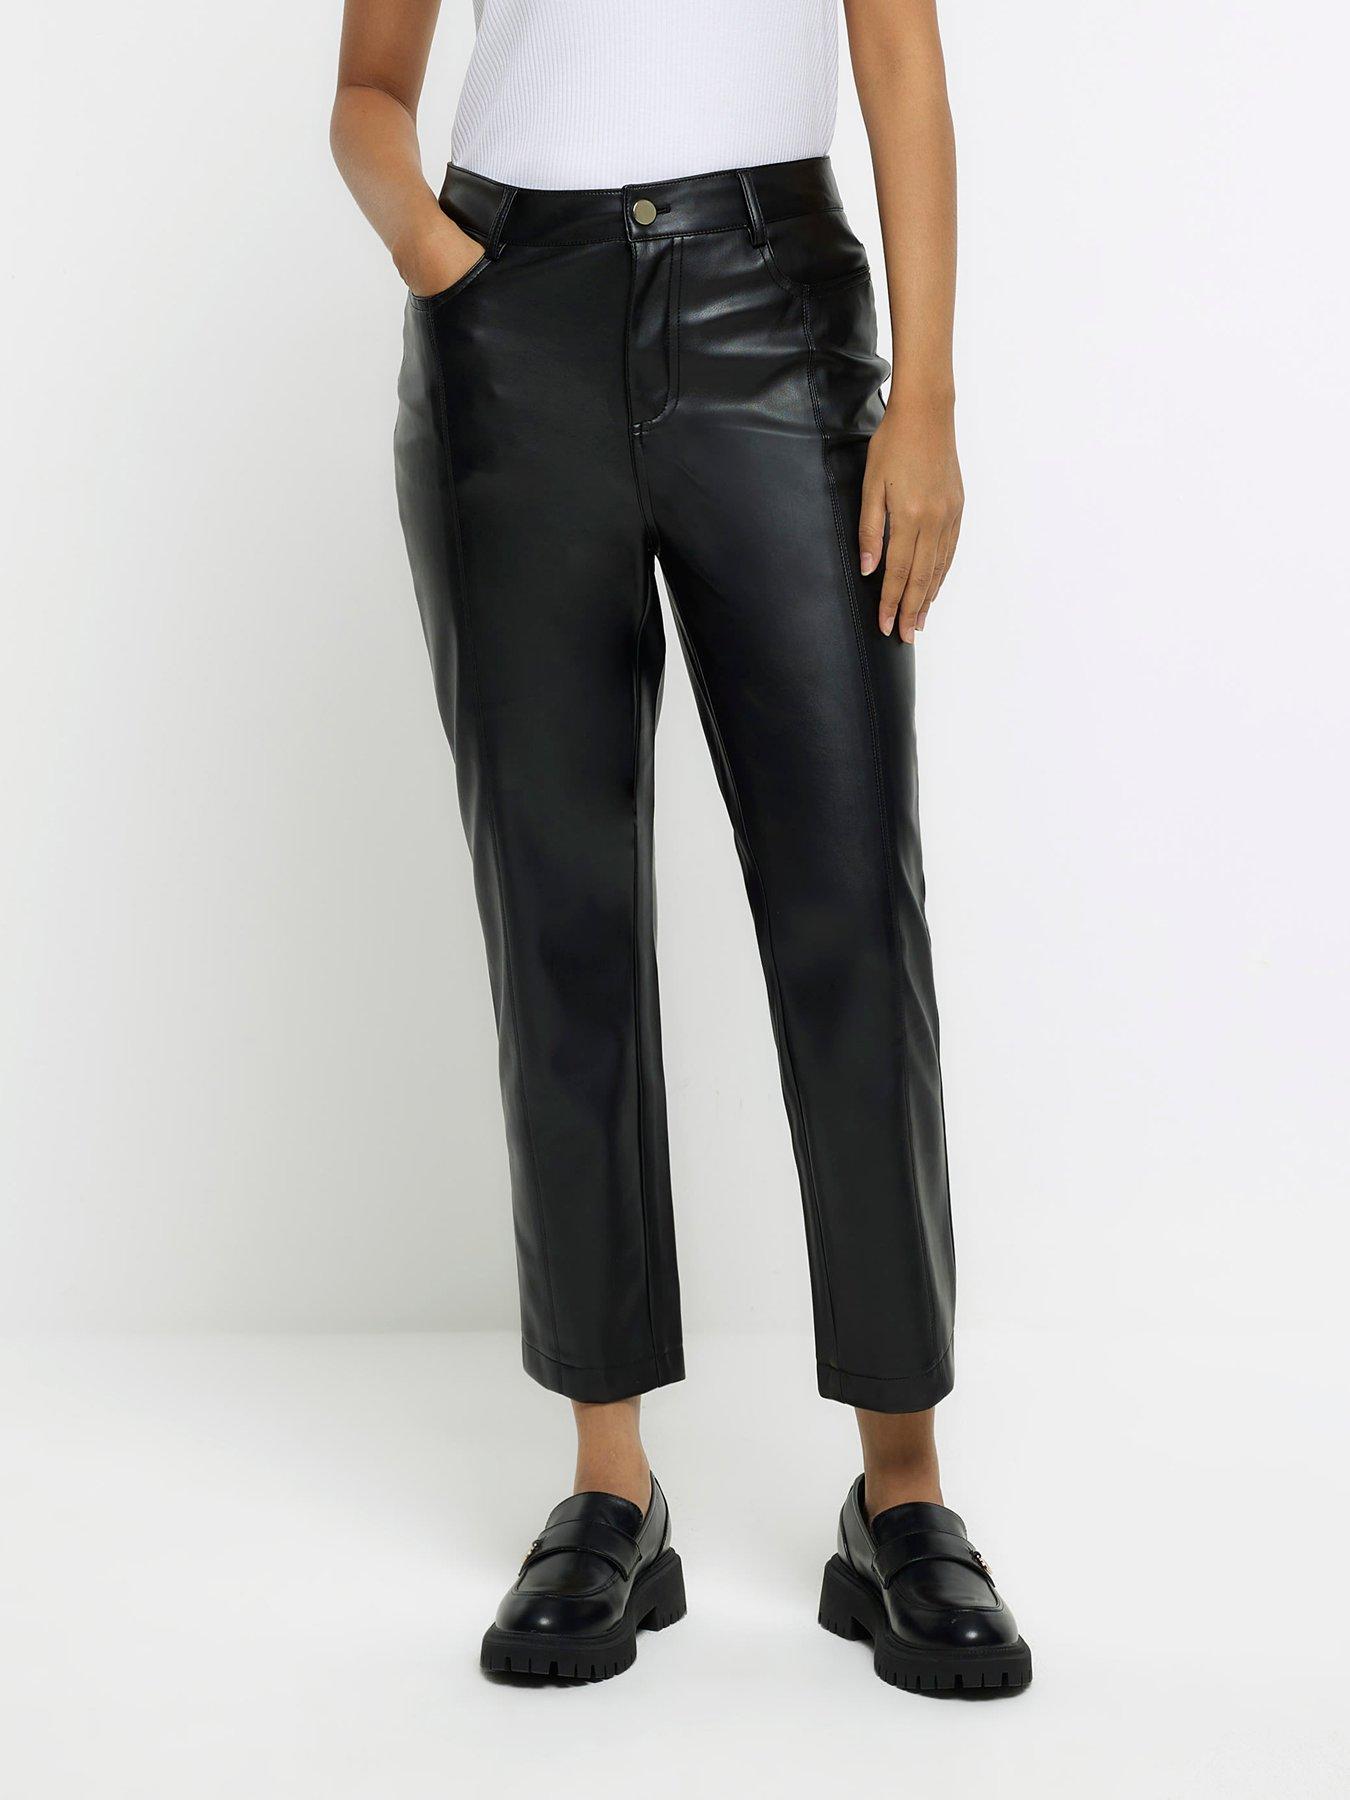 SOSANDAR Black Button Front Faux Leather Trousers RRP £175 size UK 12